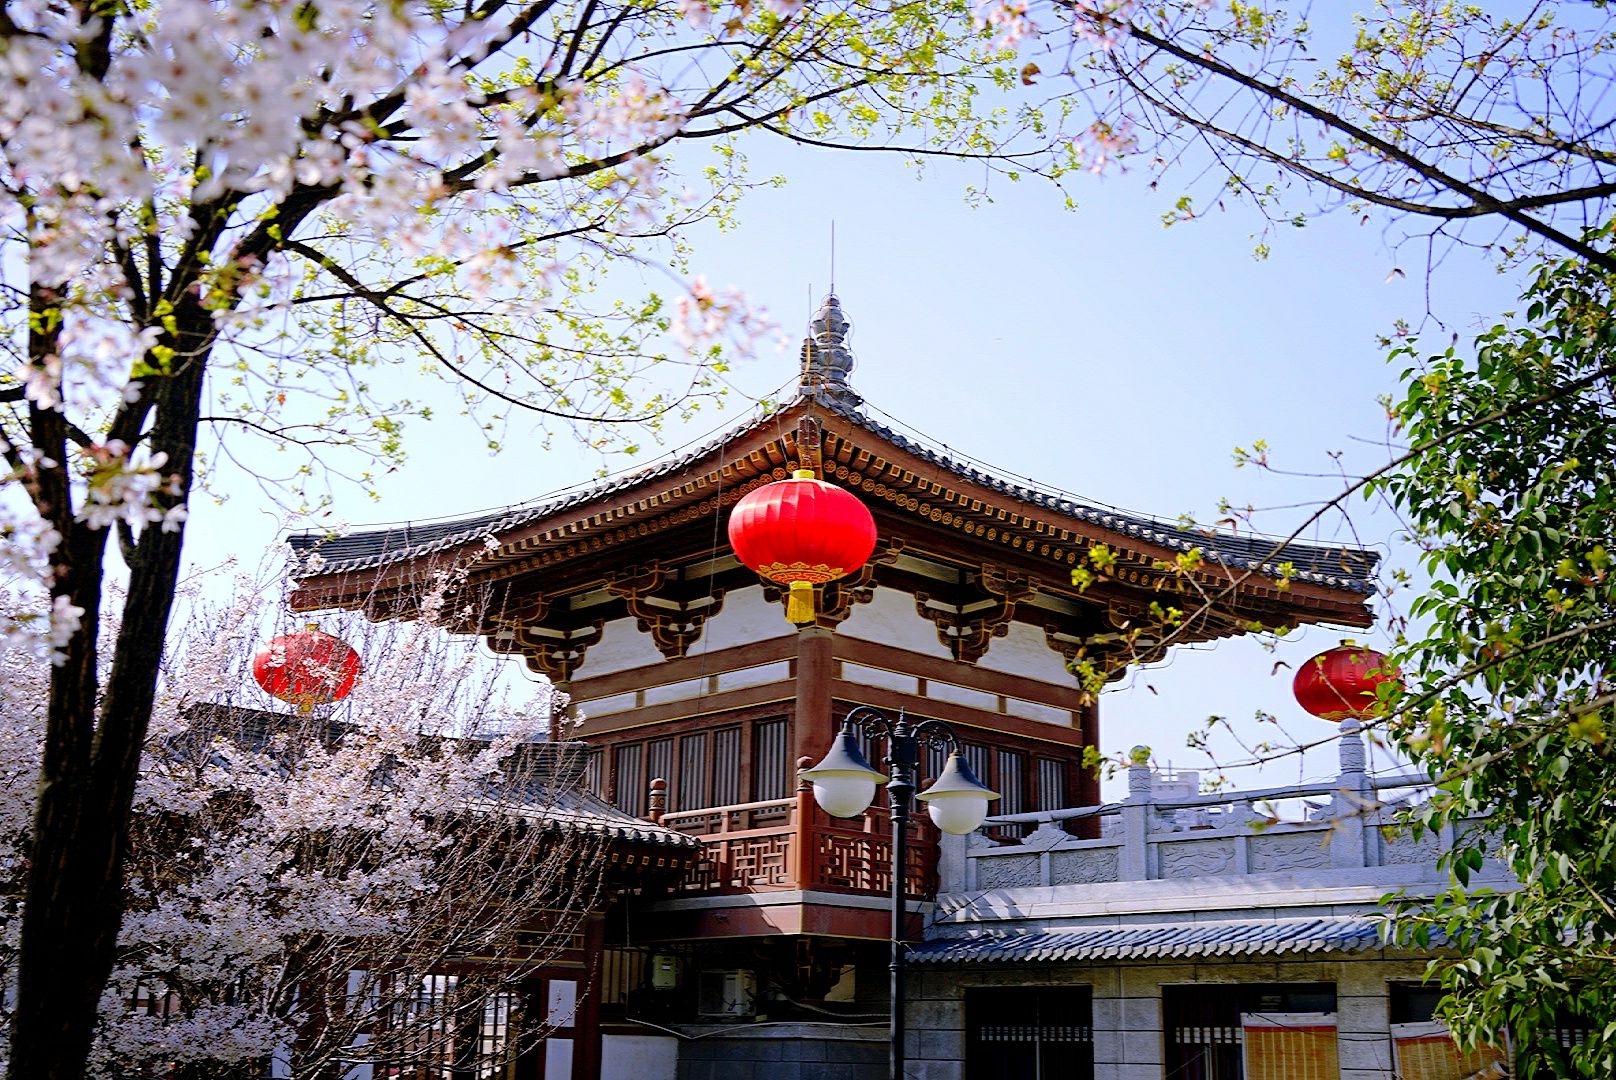 西安青龙寺照片图片